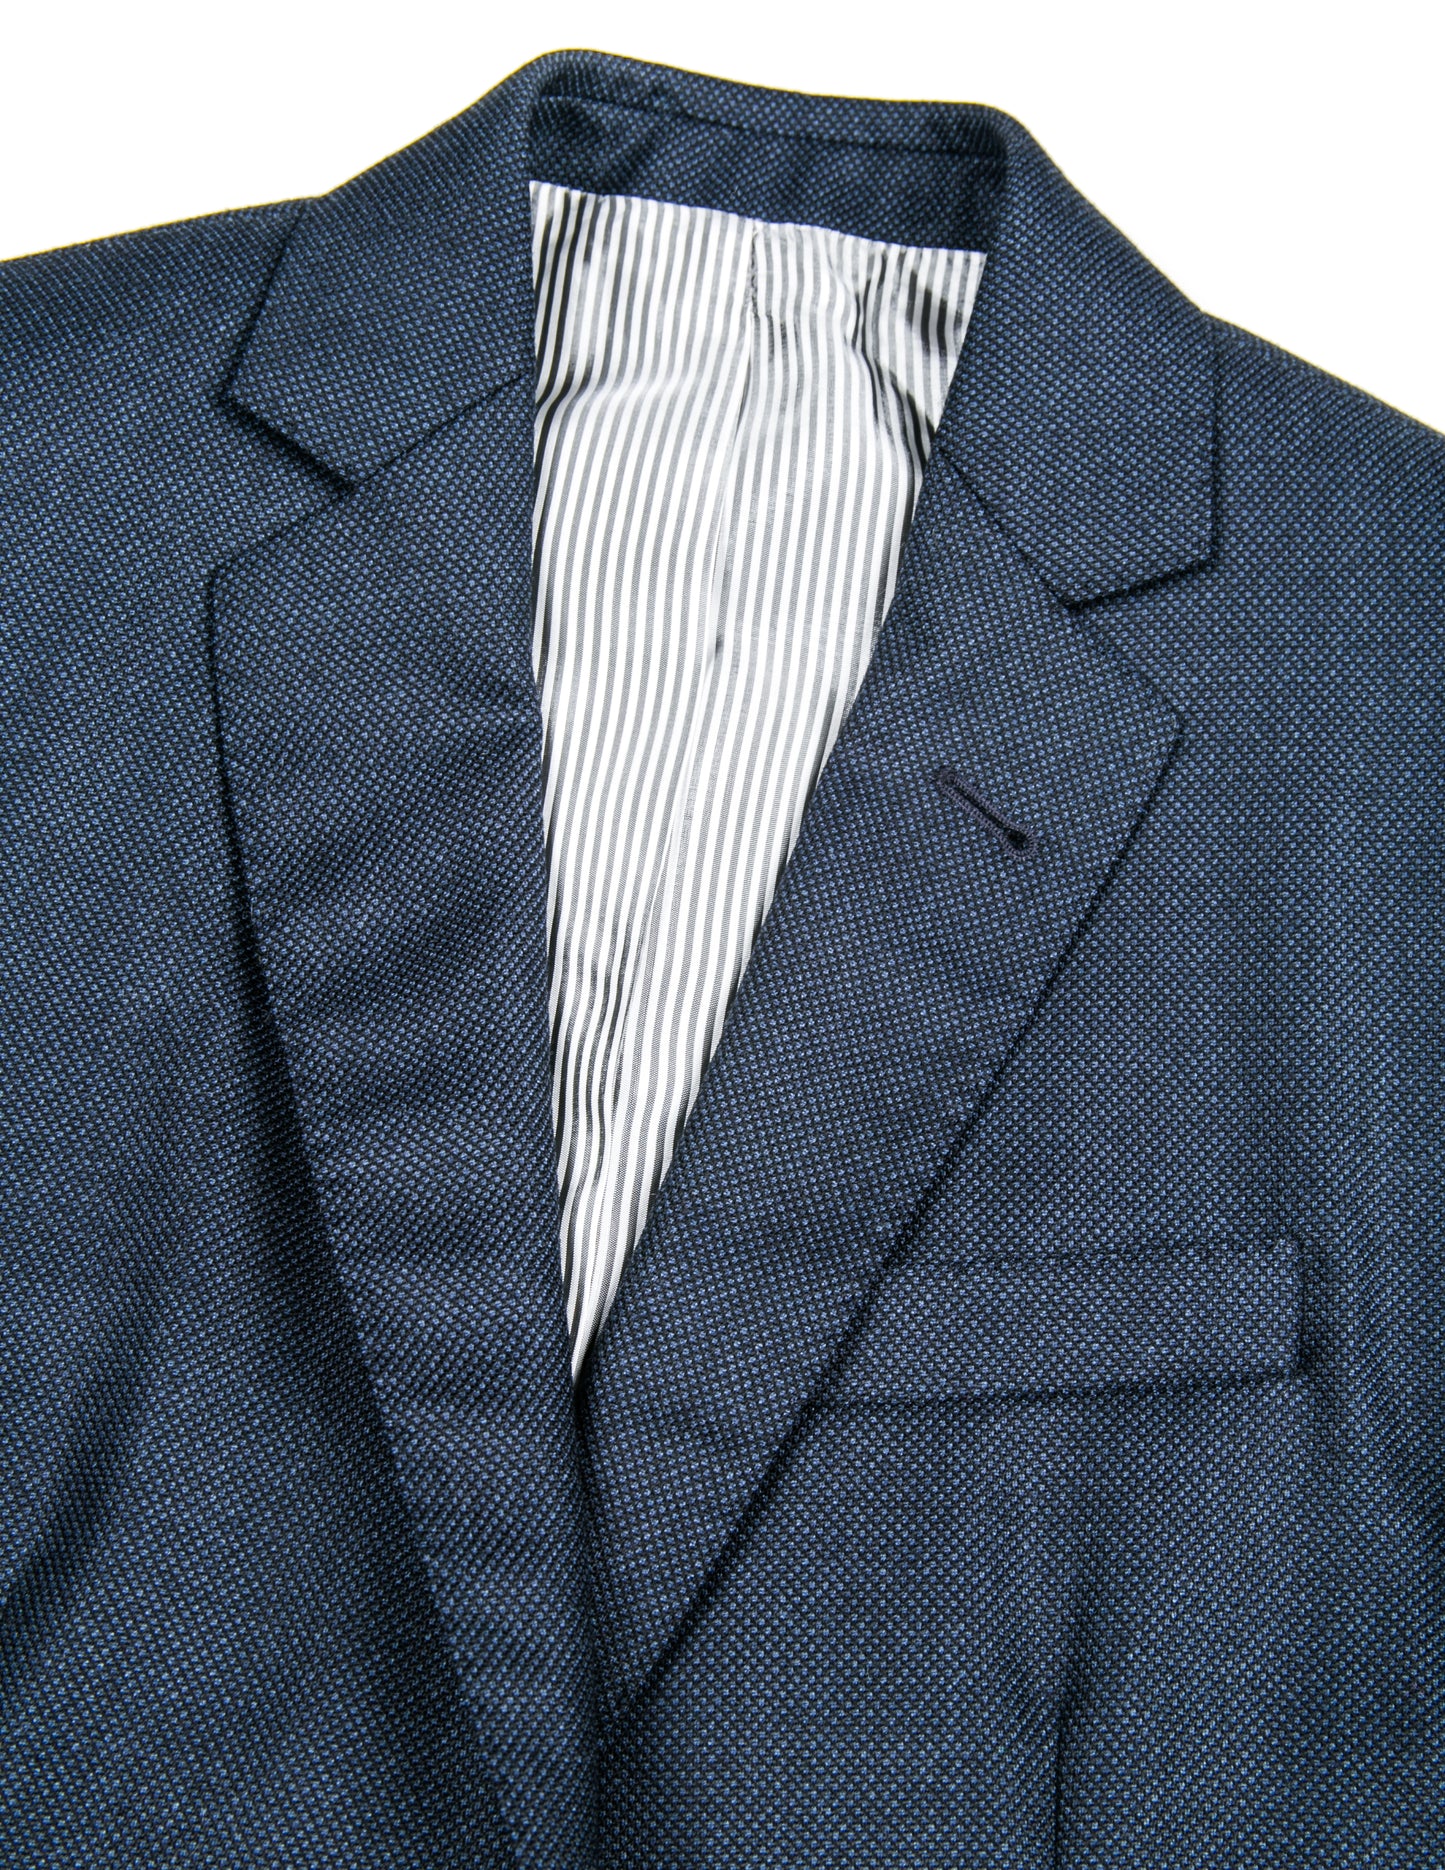 BKT50 Tailored Jacket in Birdseye Weave - Navy – Brooklyn Tailors